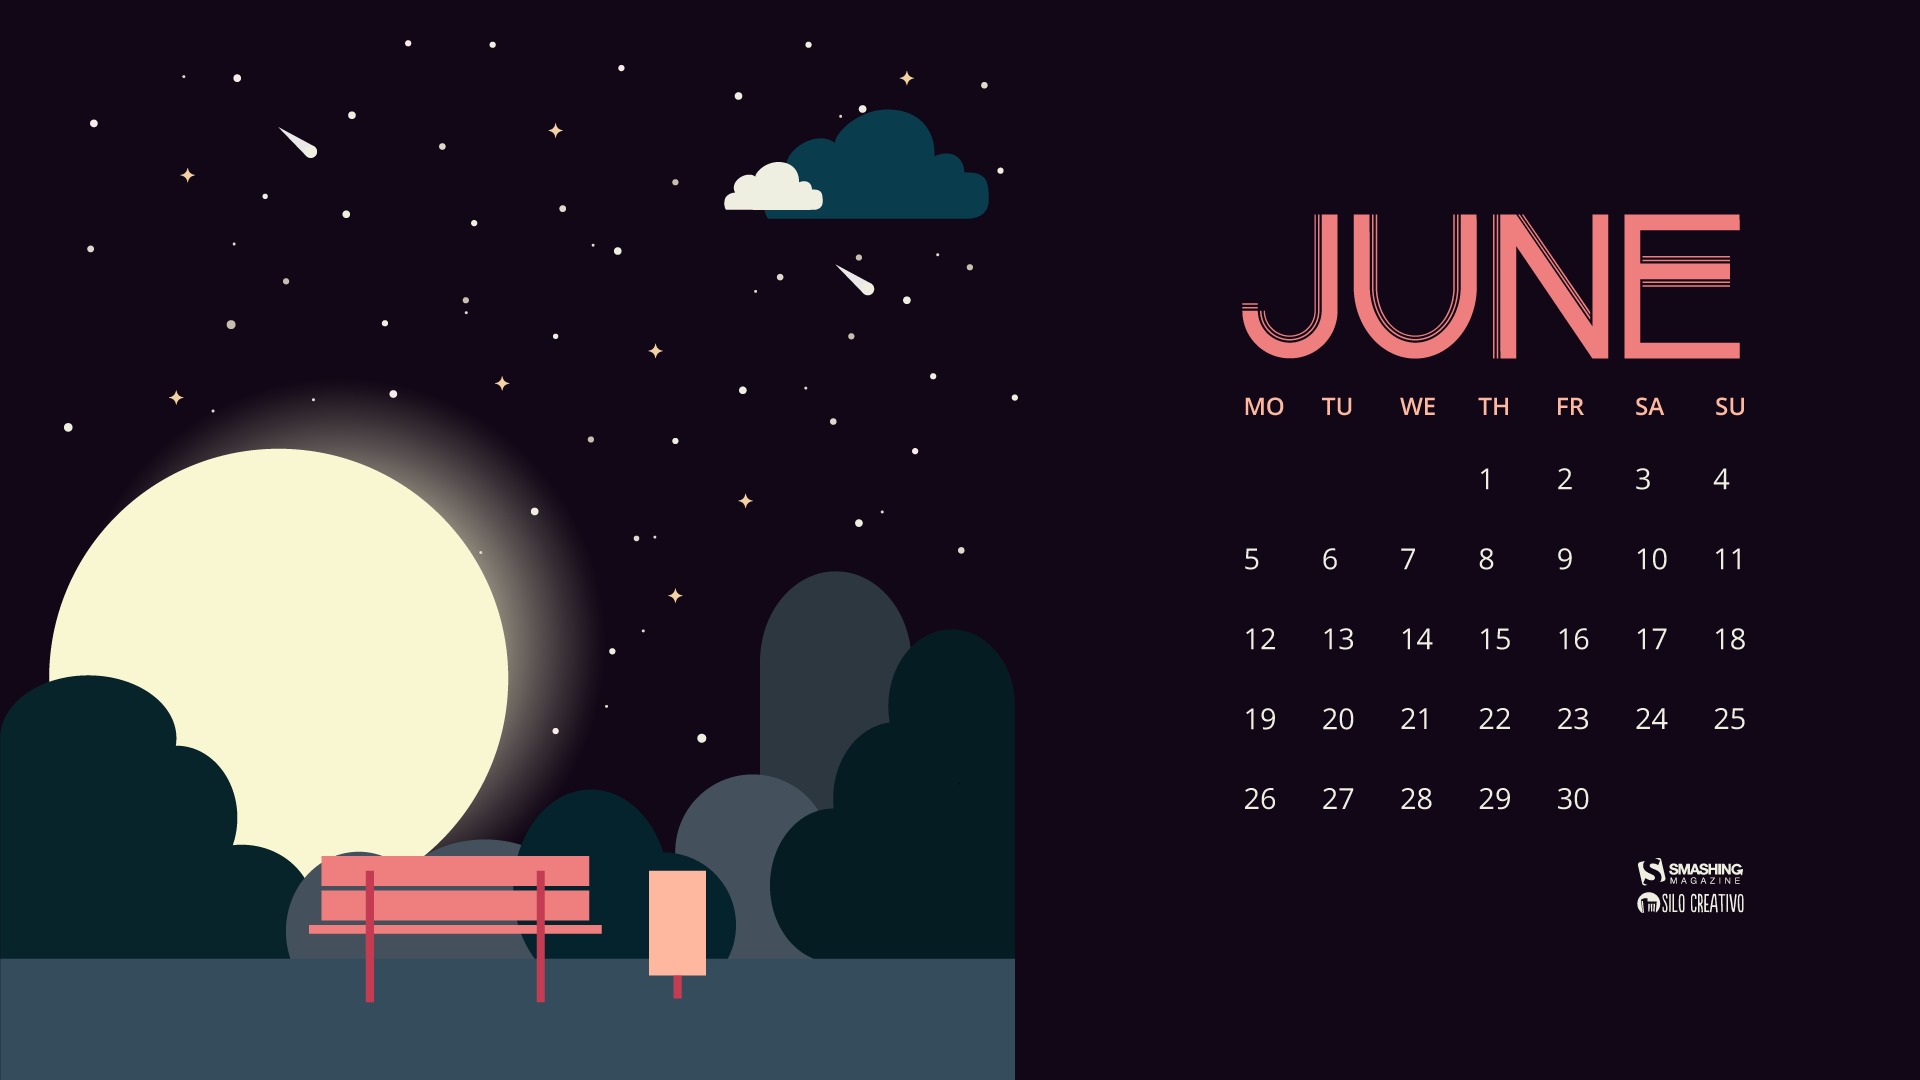 June 2017 calendar wallpaper #16 - 1920x1080